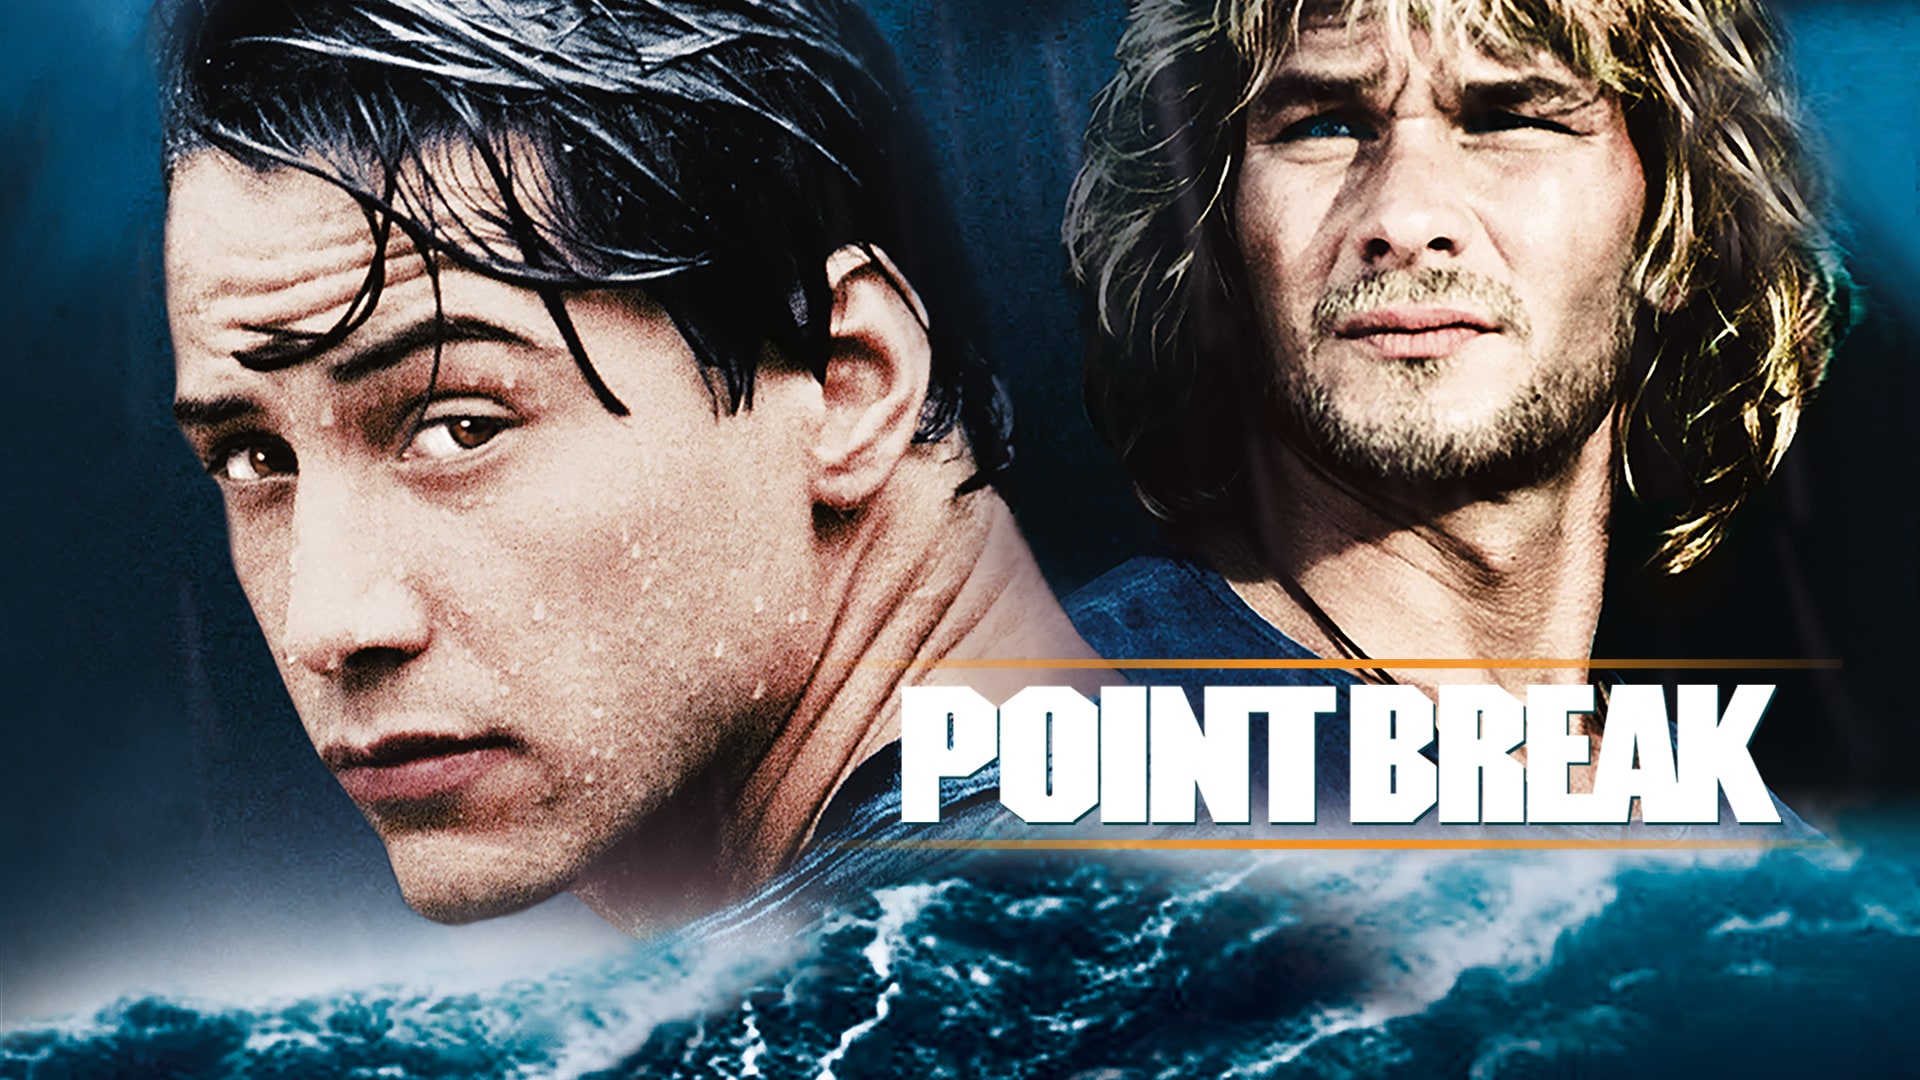 Watch Point Break (1991) Online | Stream Full Movies